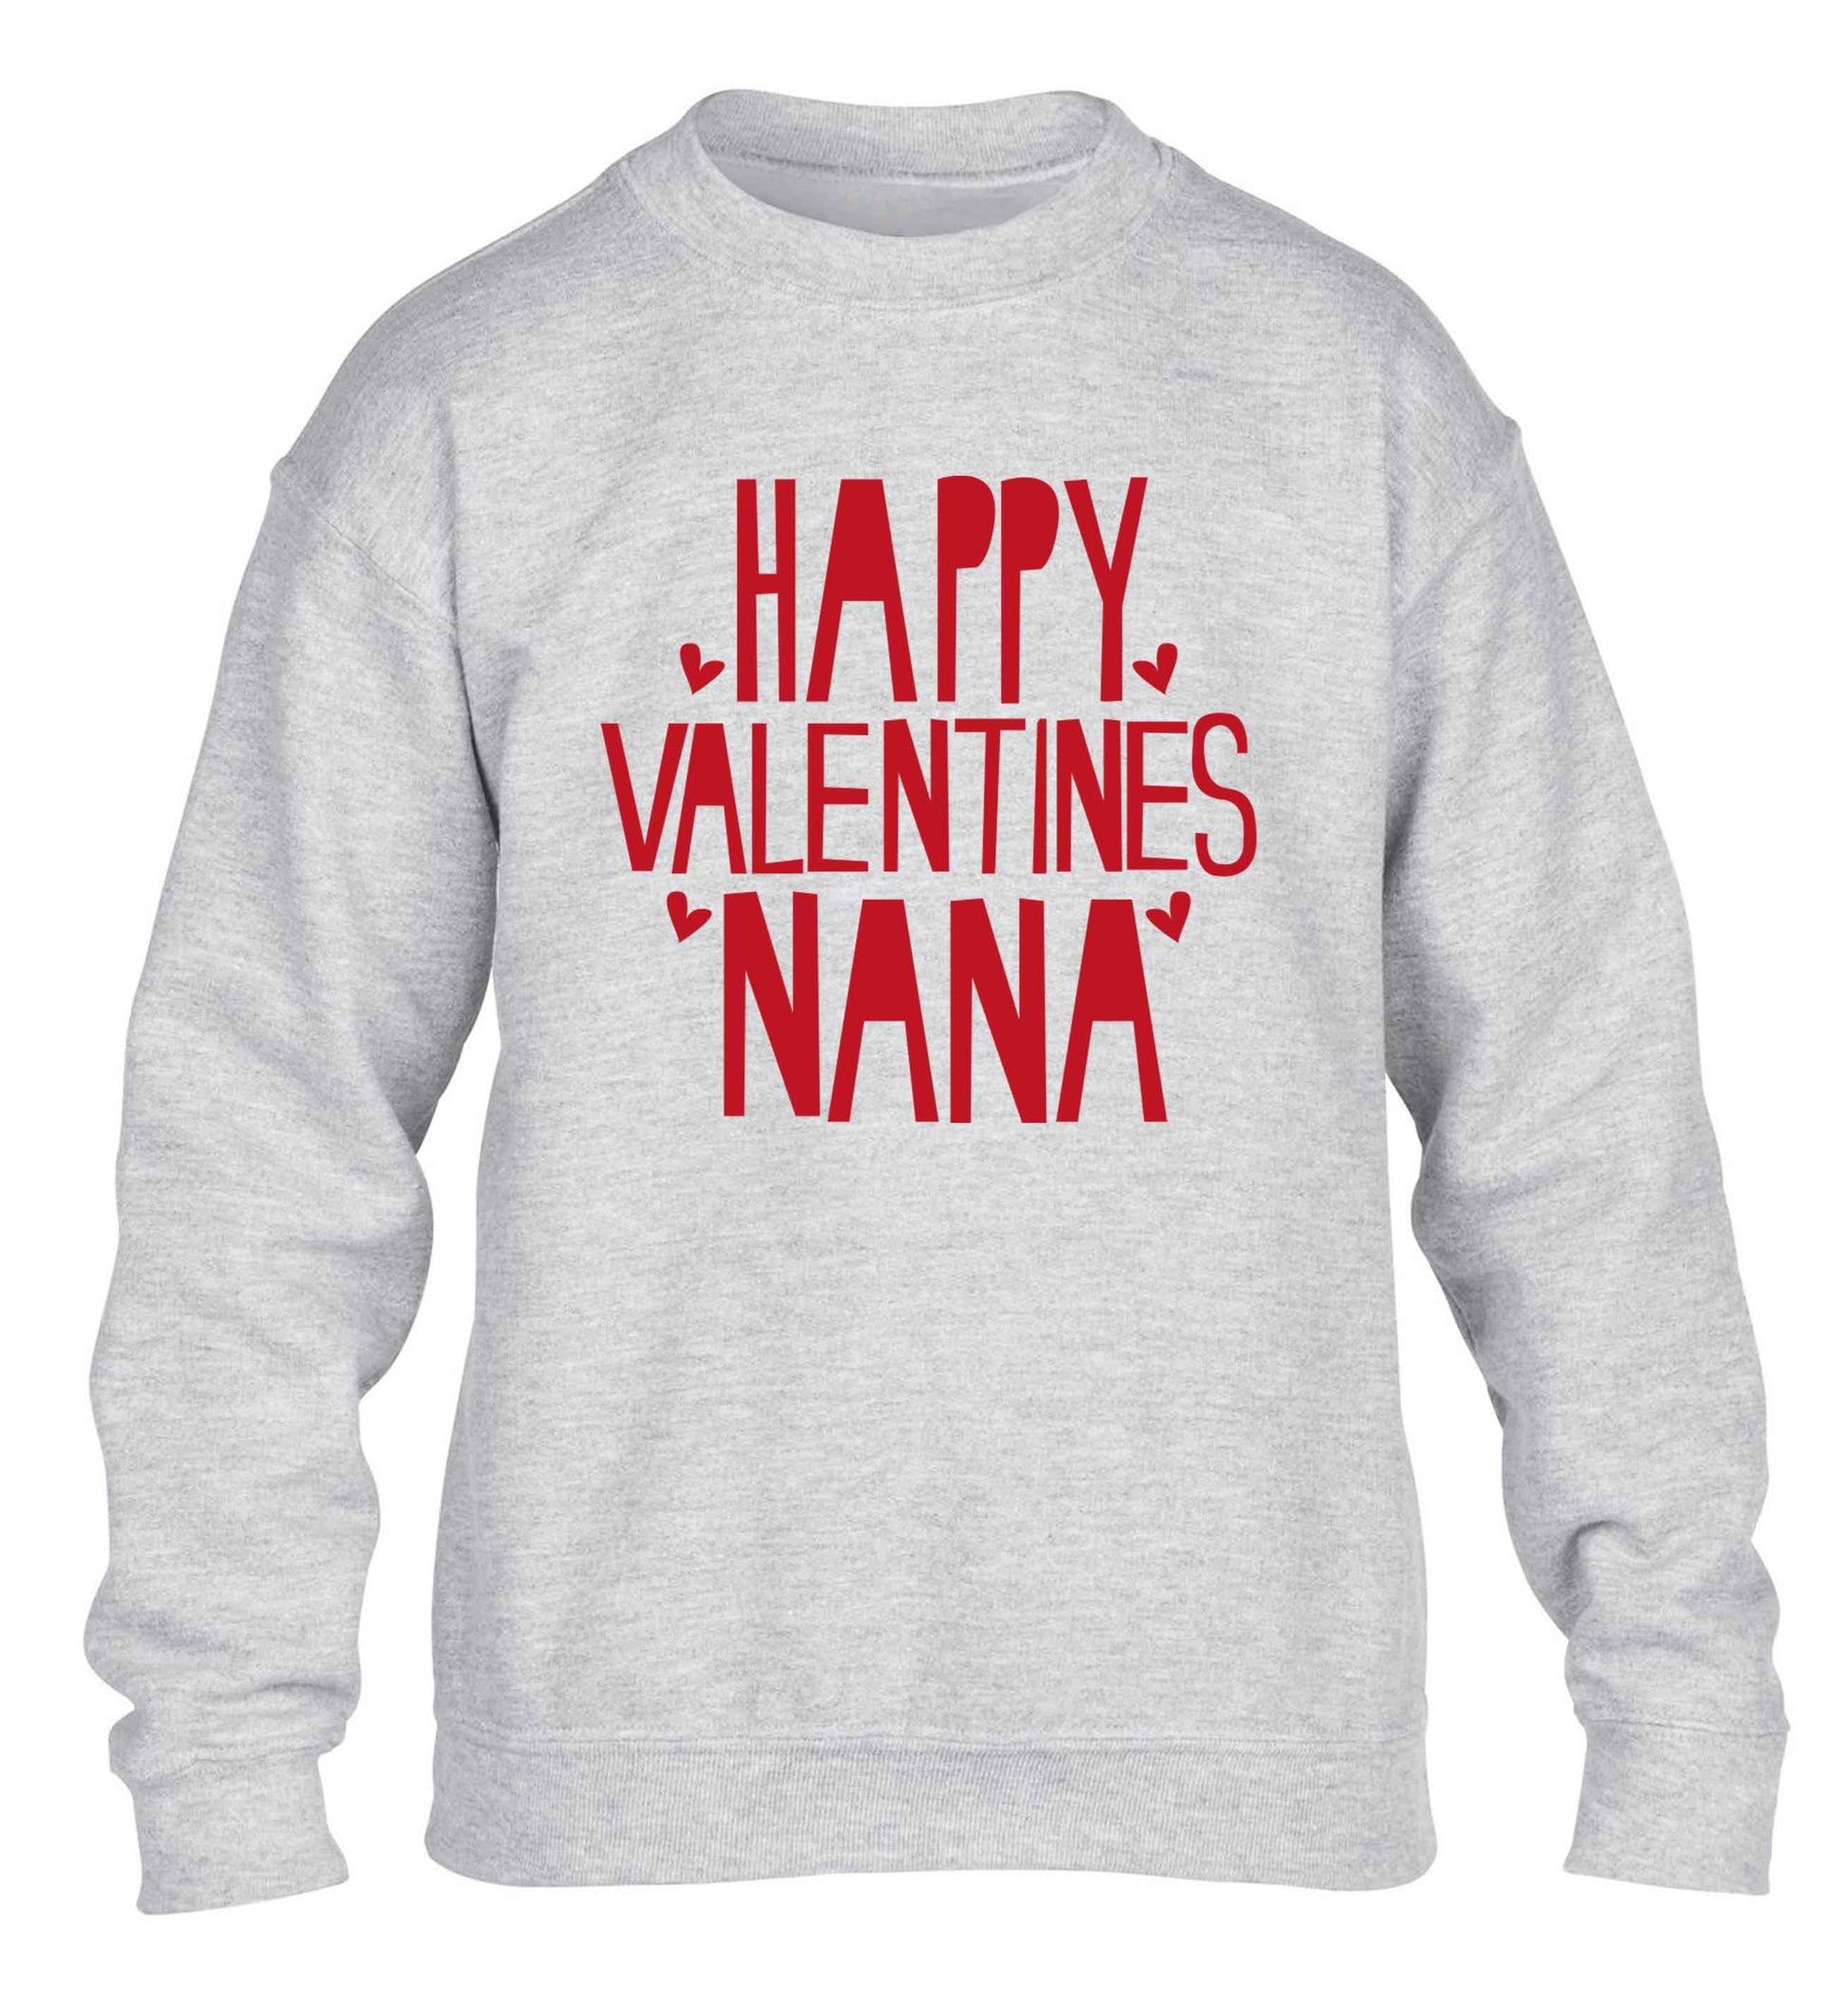 Happy valentines nana children's grey sweater 12-13 Years